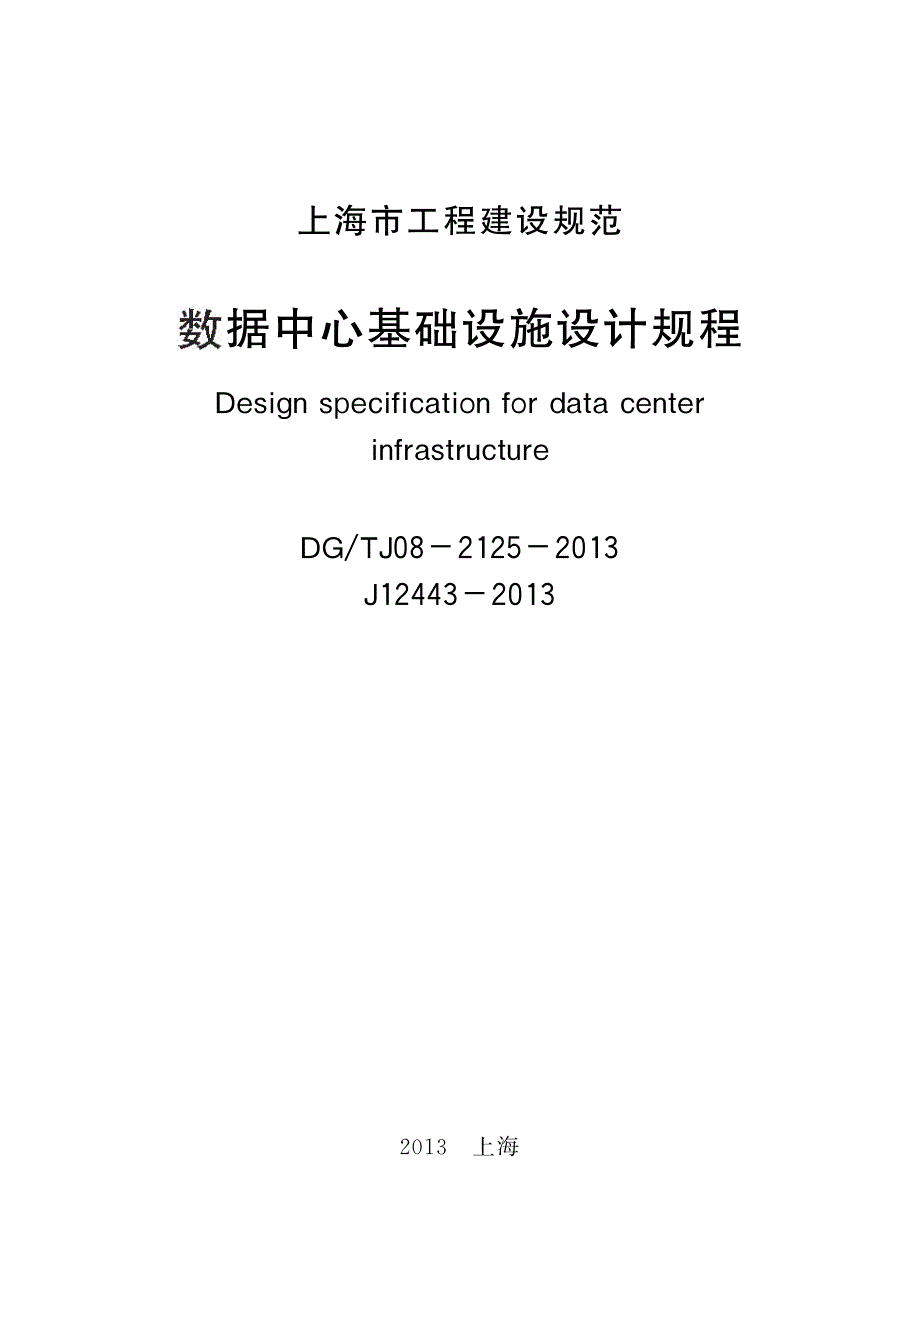 上海建规数据中心基础设施设计规程dgtj08-2125-2013_第2页